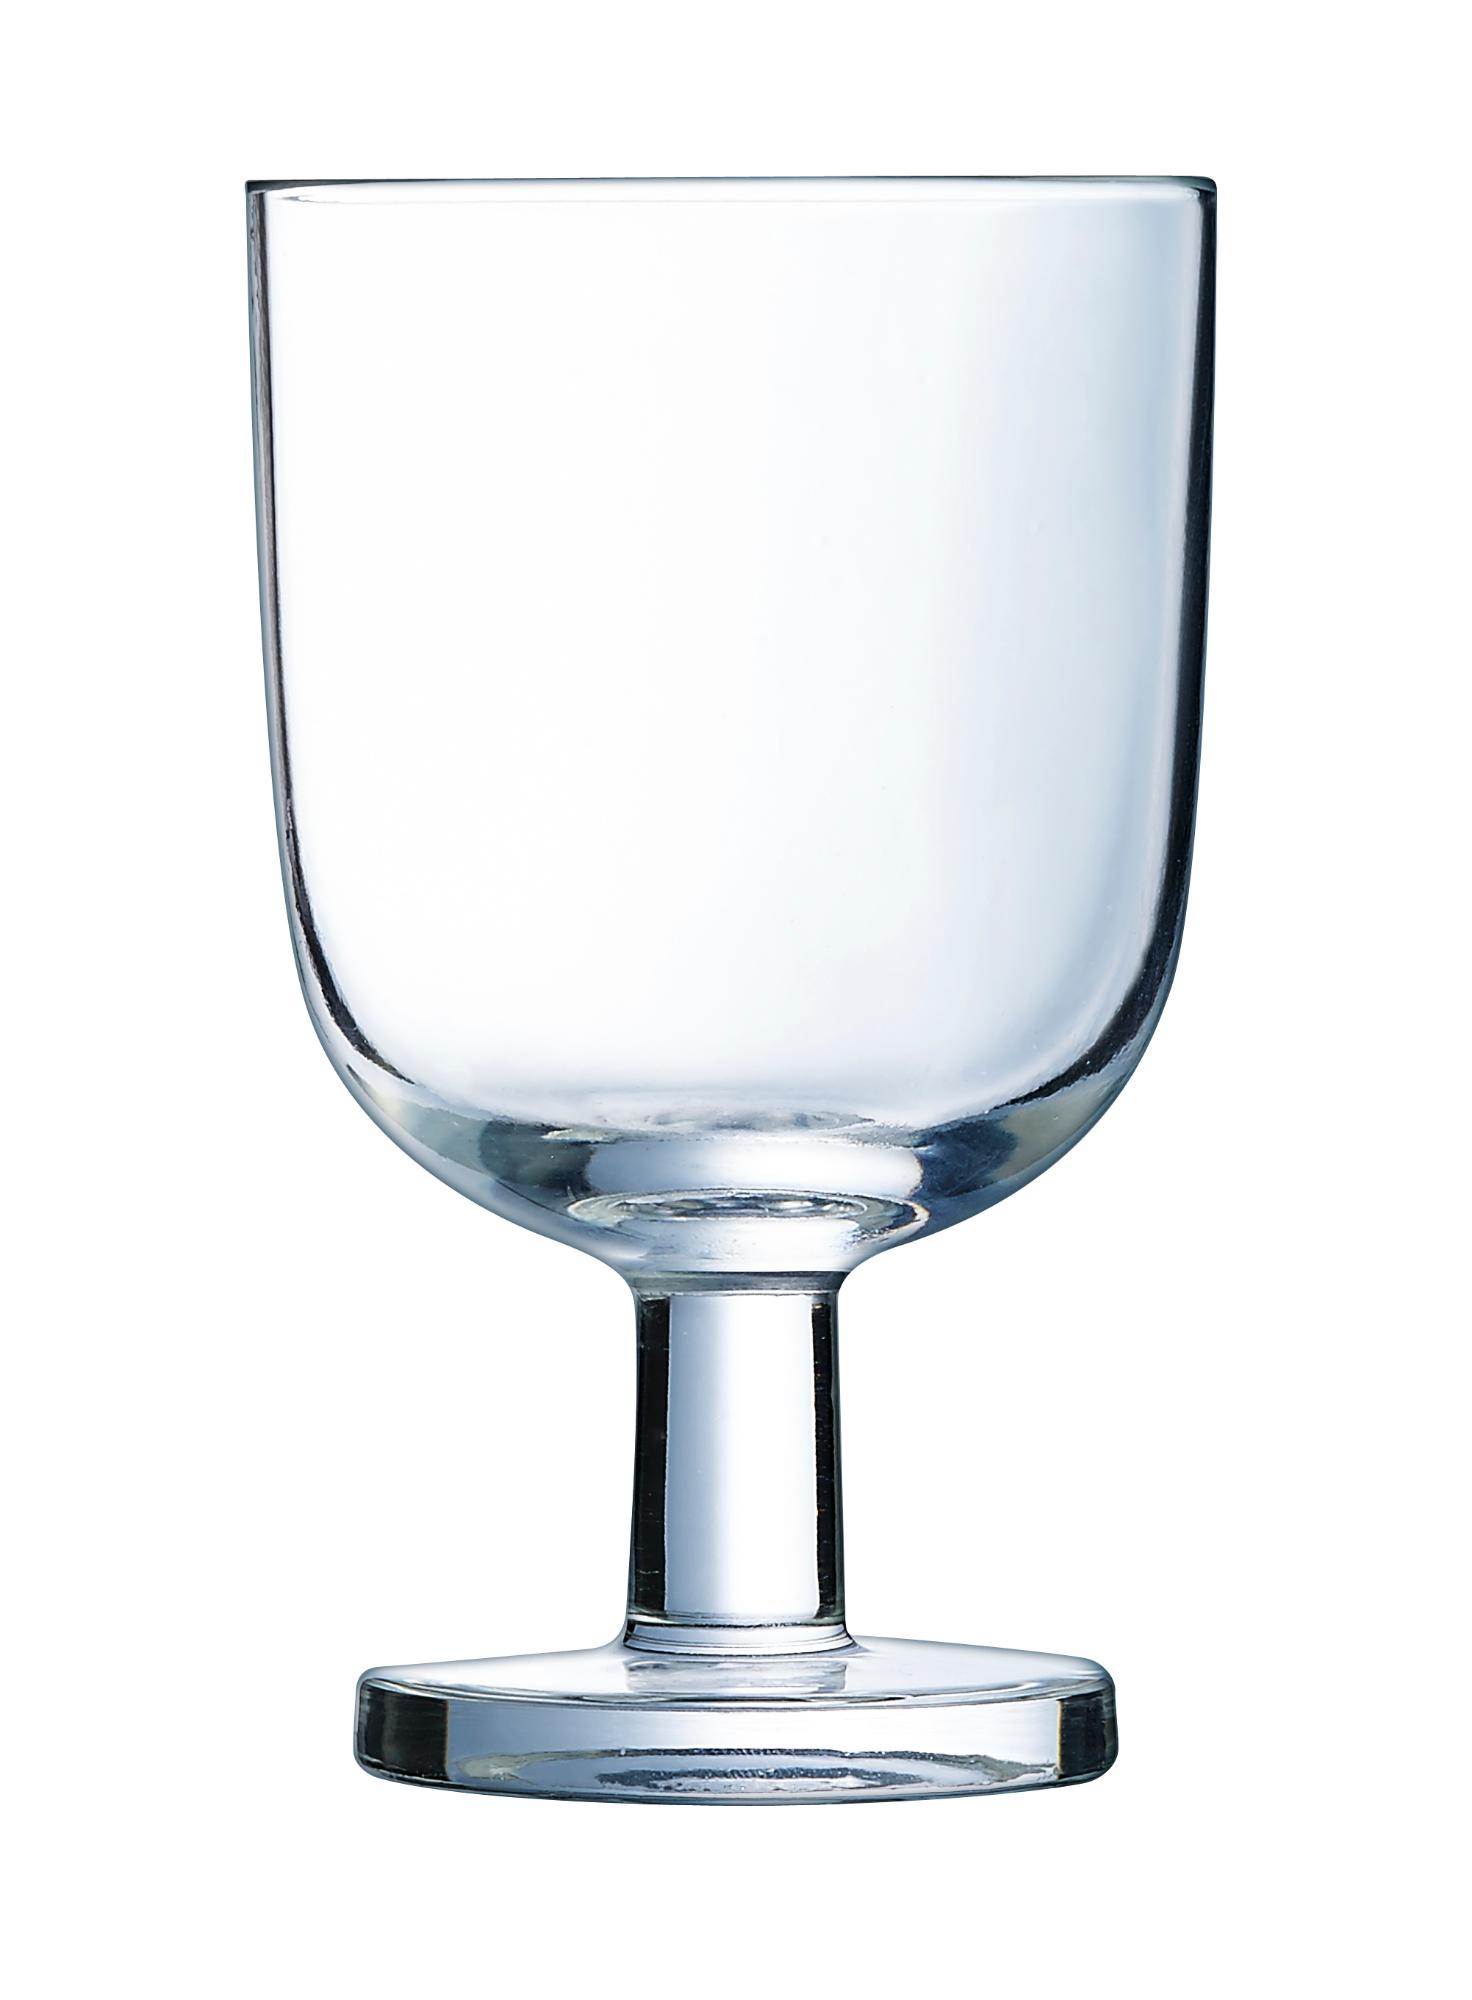 Resto glass, 200ml